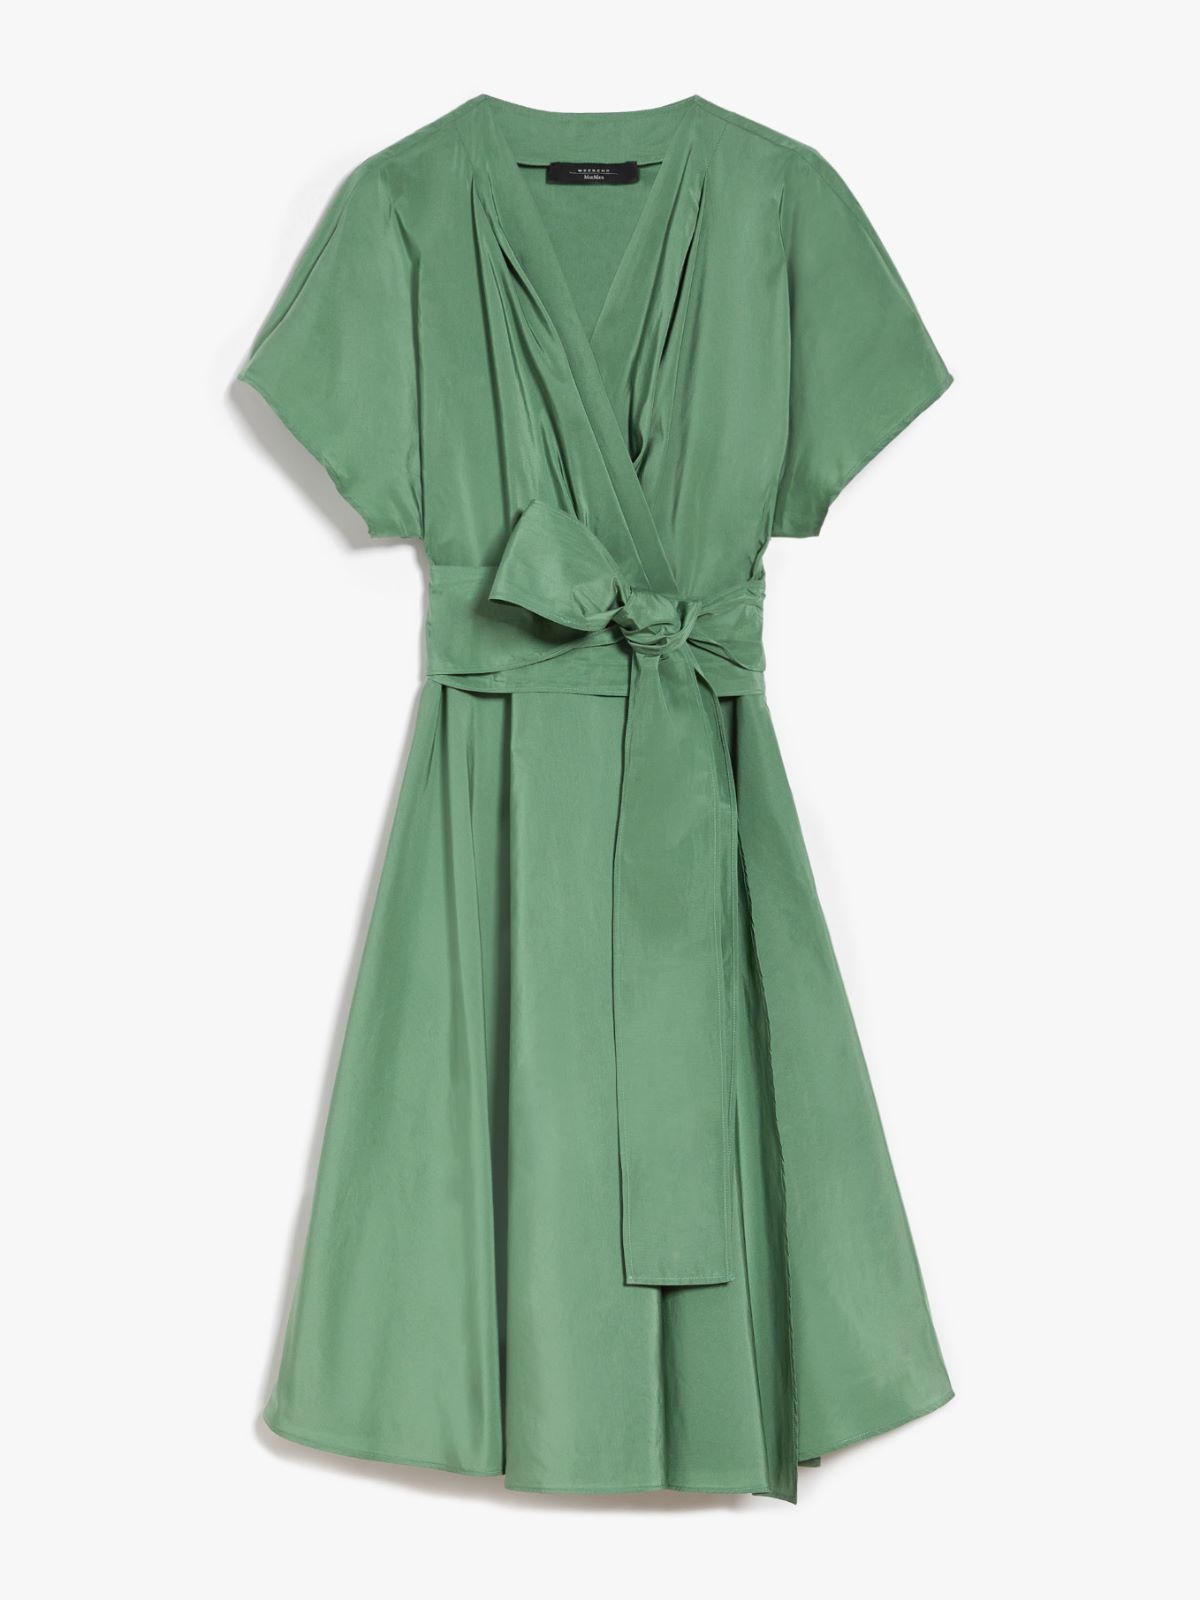 Sueno Woven Taffeta Square Neck Mini Dress in Emerald Green